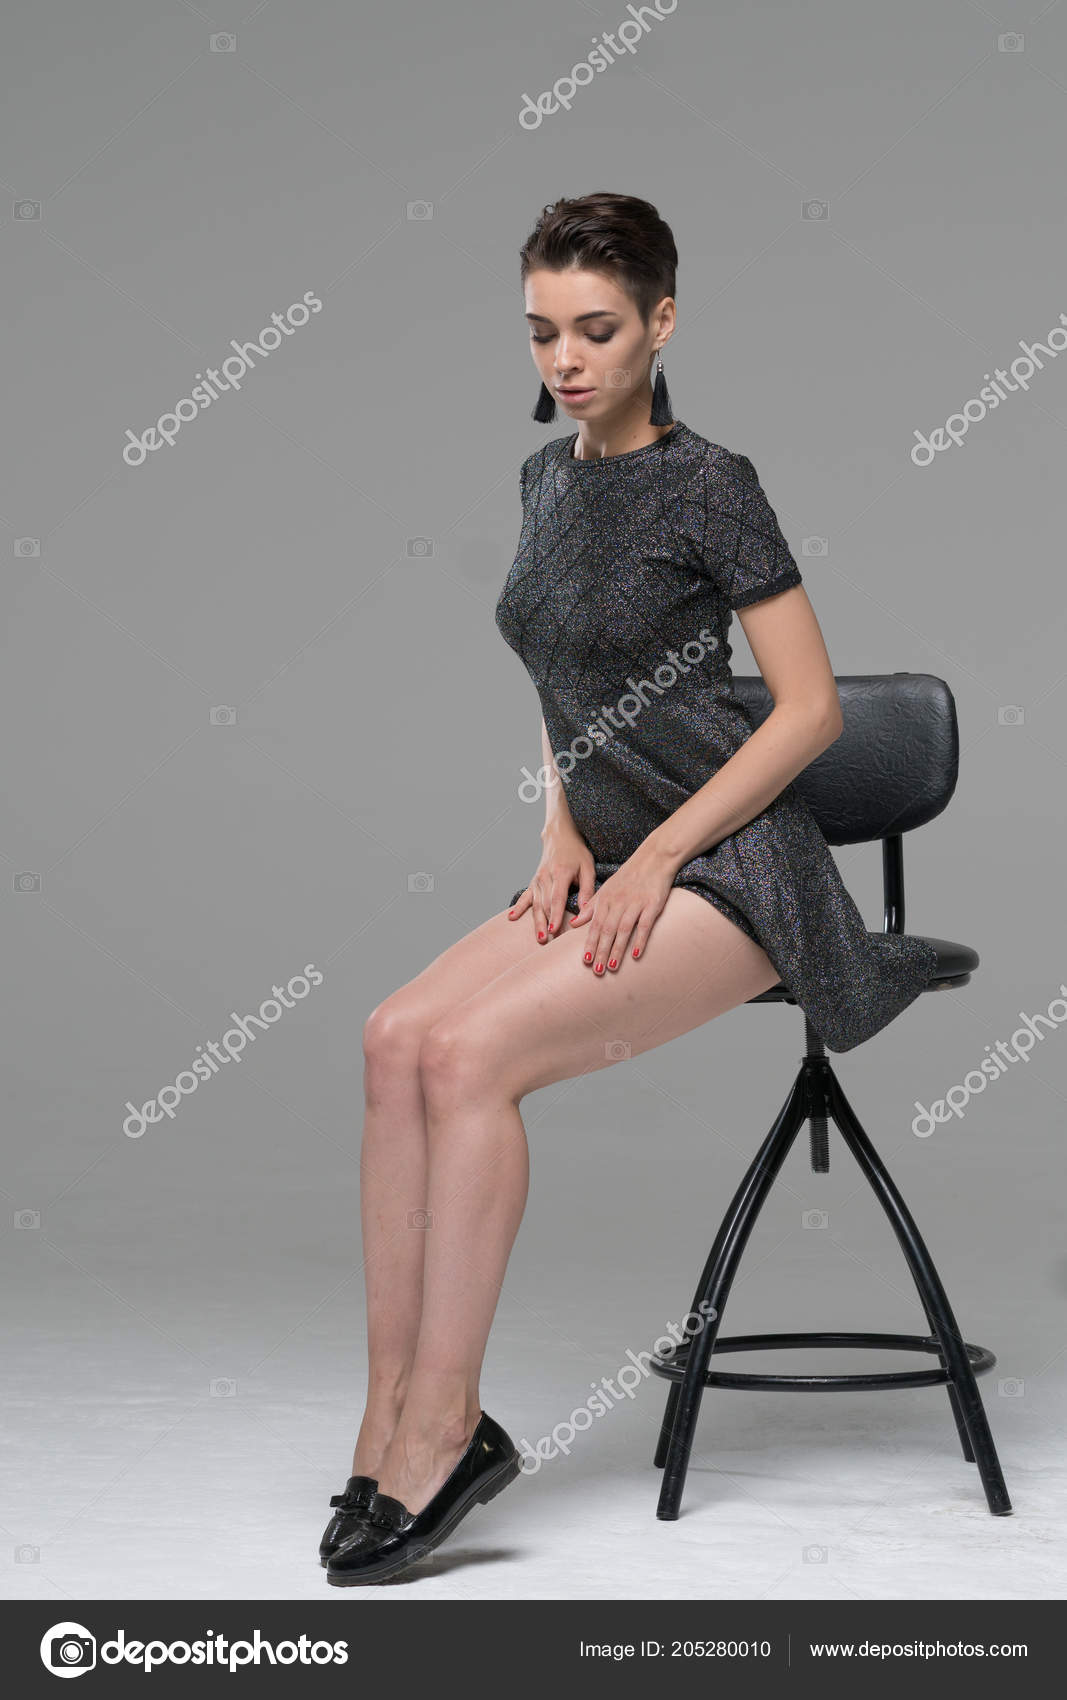 https://st4.depositphotos.com/10086424/20528/i/1600/depositphotos_205280[000-999]-stock-photo-young-beautiful-girl-posing-studio.jpg